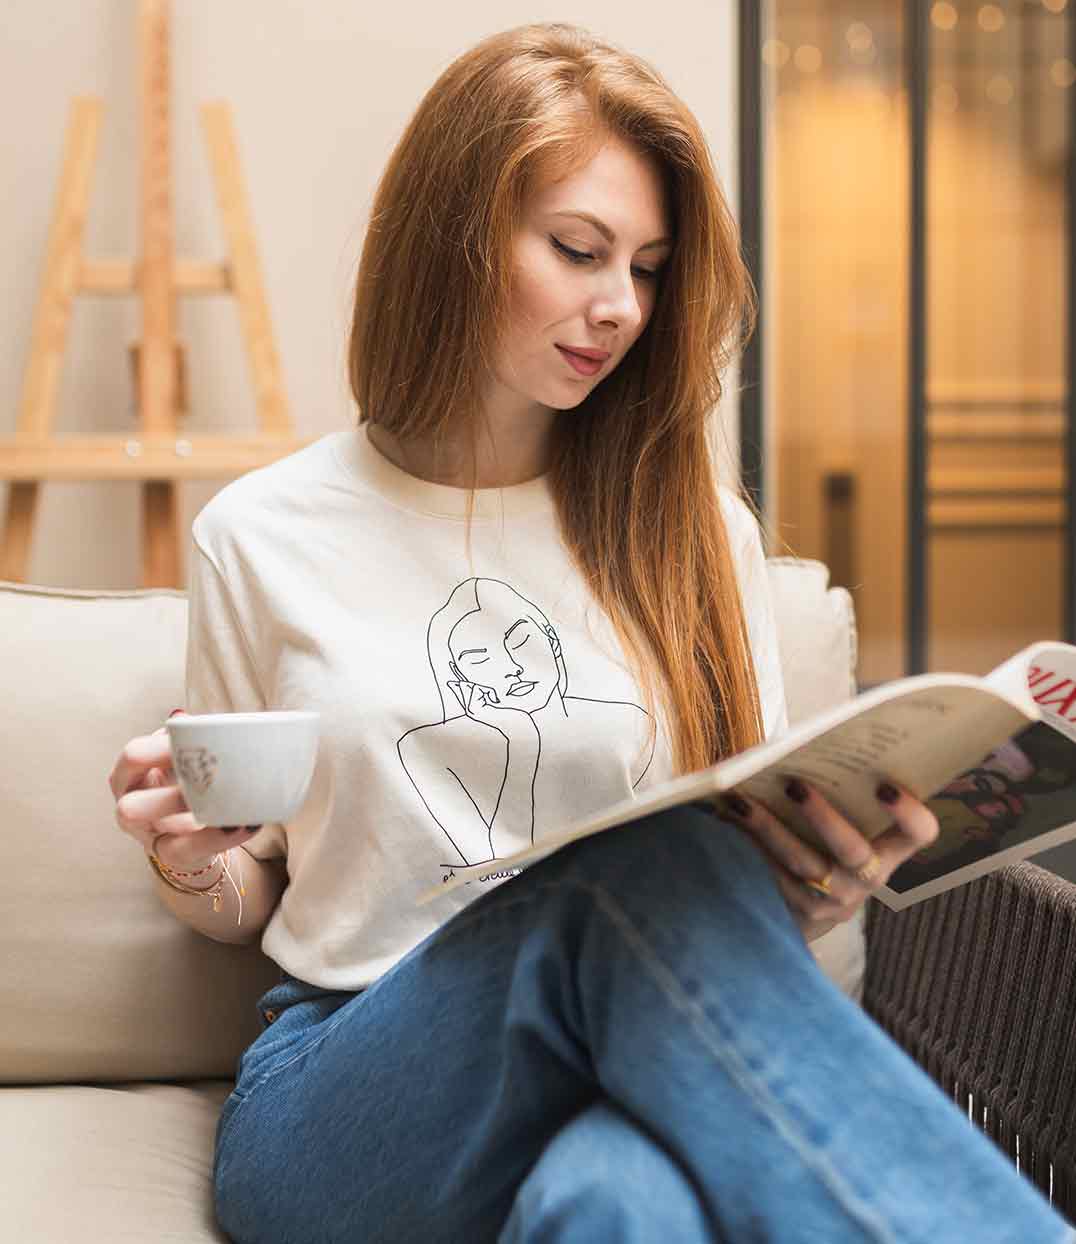 femme portant un t-shirt themis naturel en coton bio de la marque éthique et lyonnaise leonor roversi